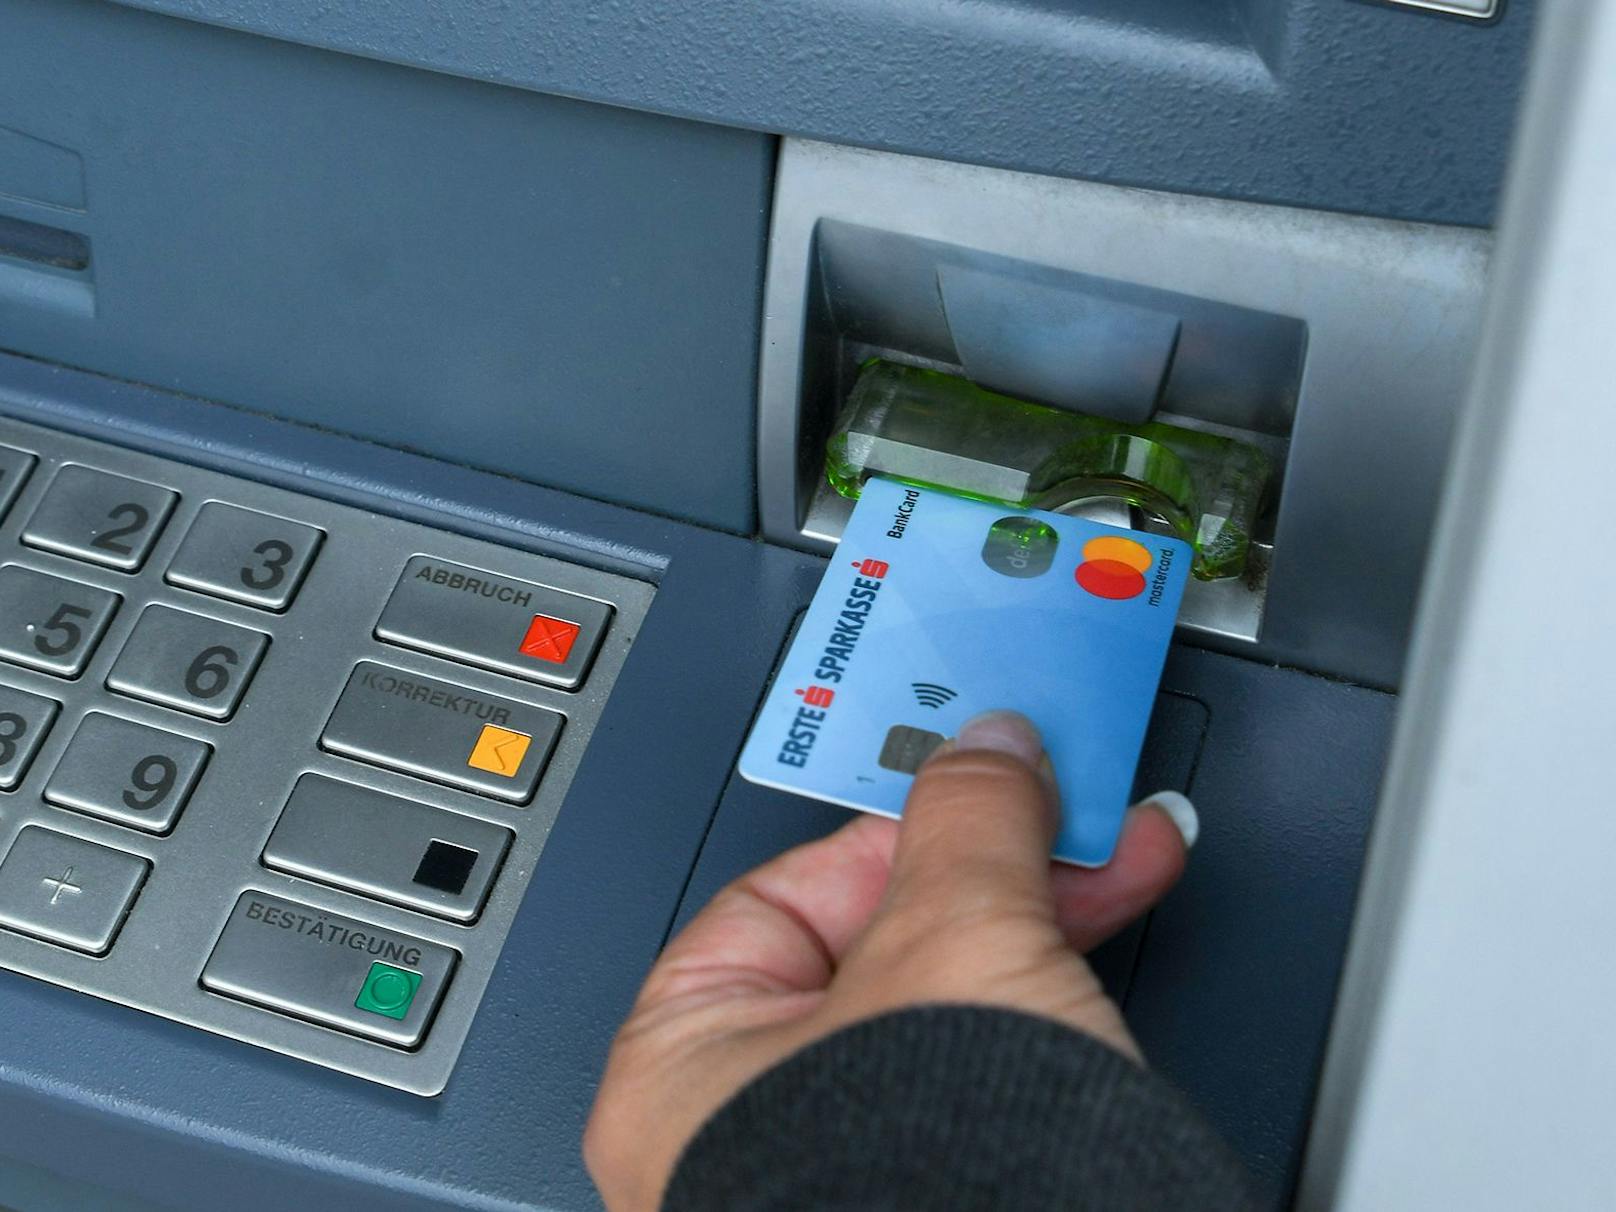 Die Bankomat-Trickbetrüger versuchen an das Geld zu kommen, während man beim Bankomat steht. Vorsicht ist geboten!